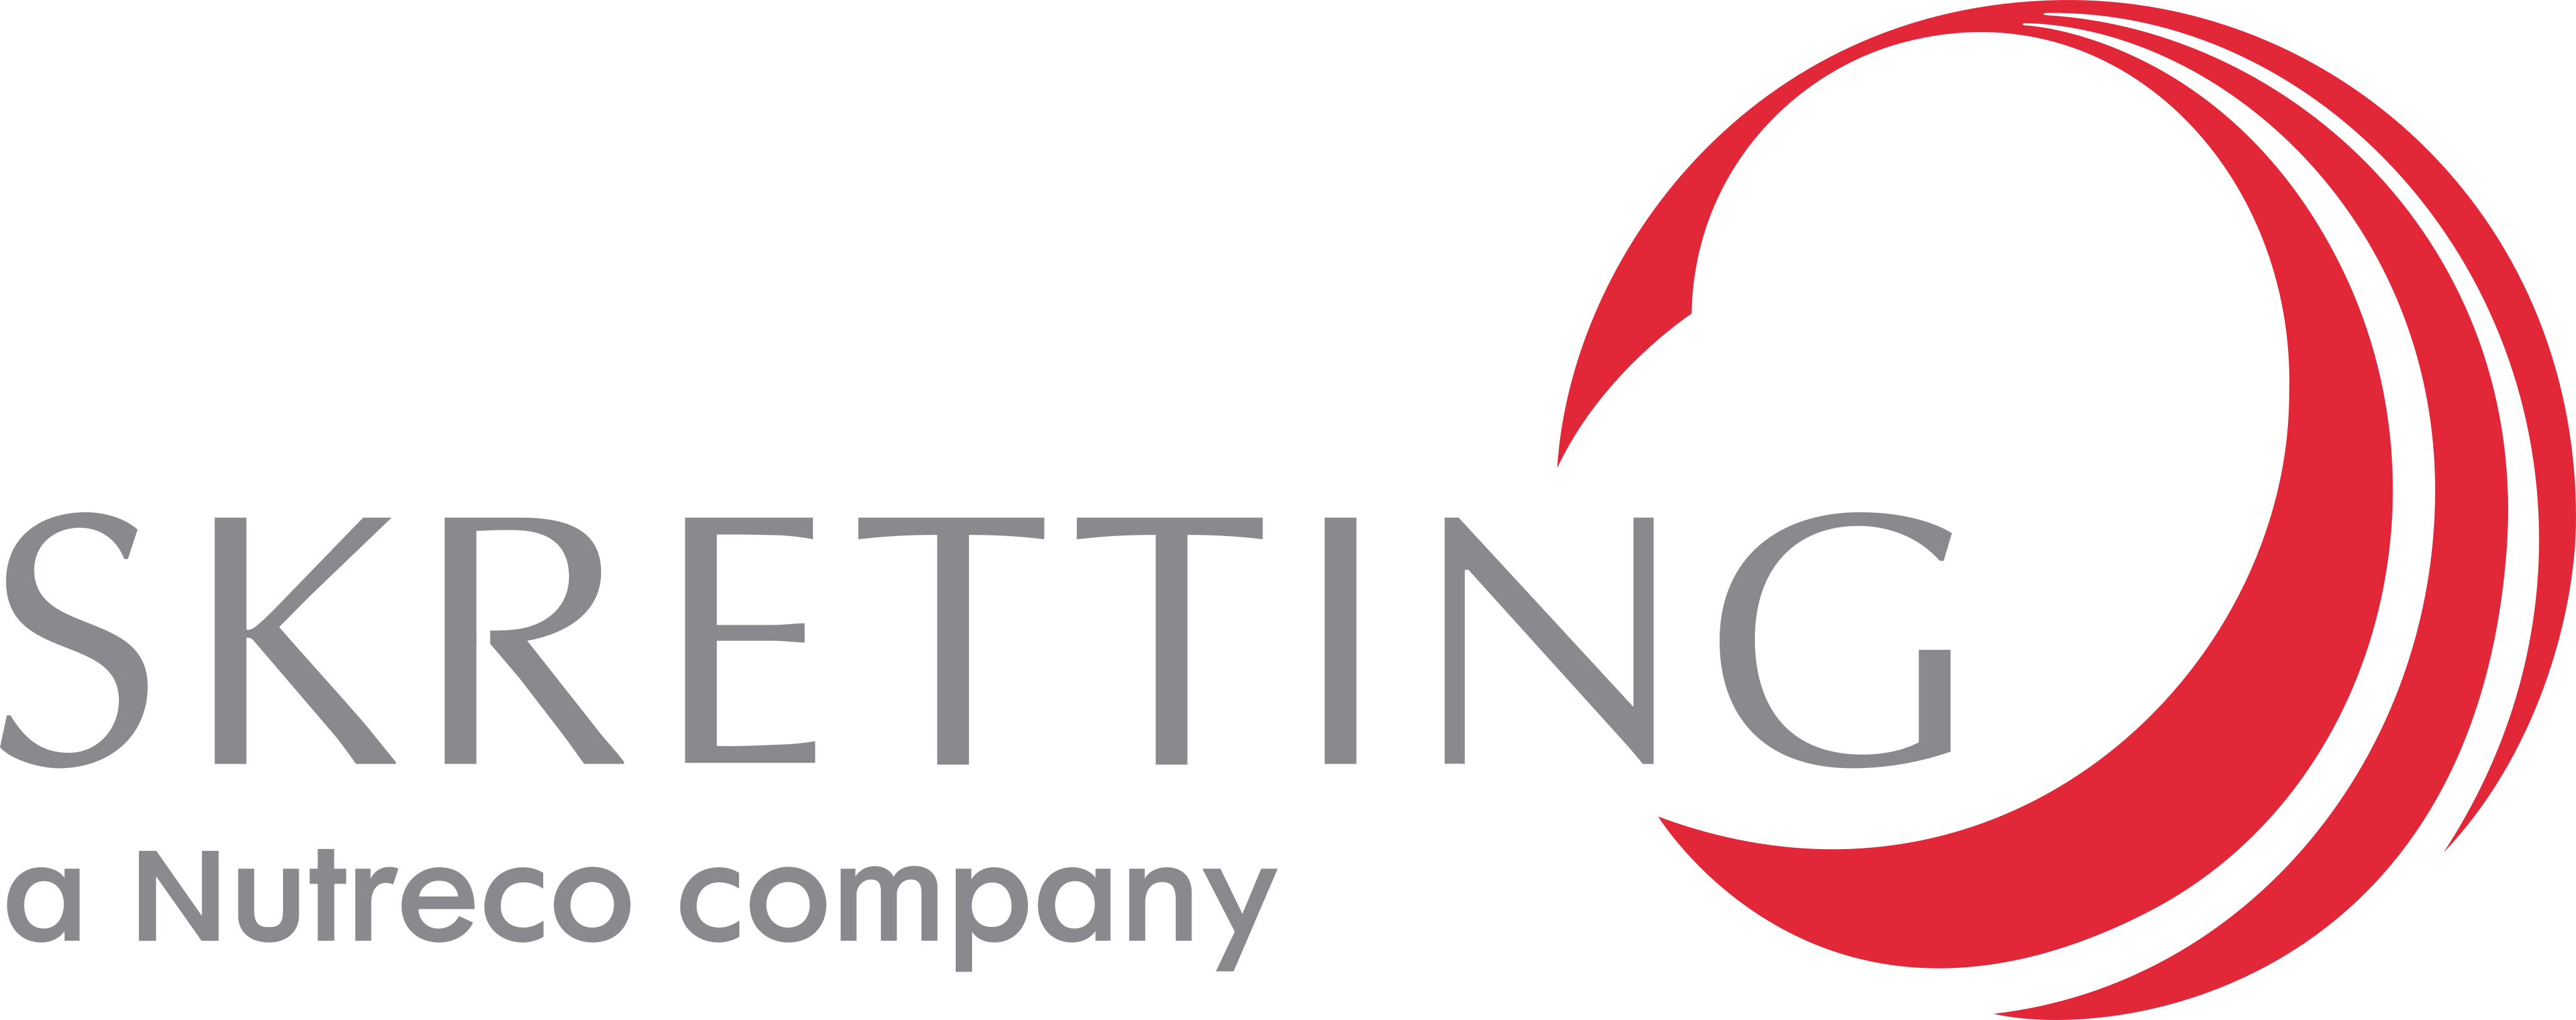 skretting-logo